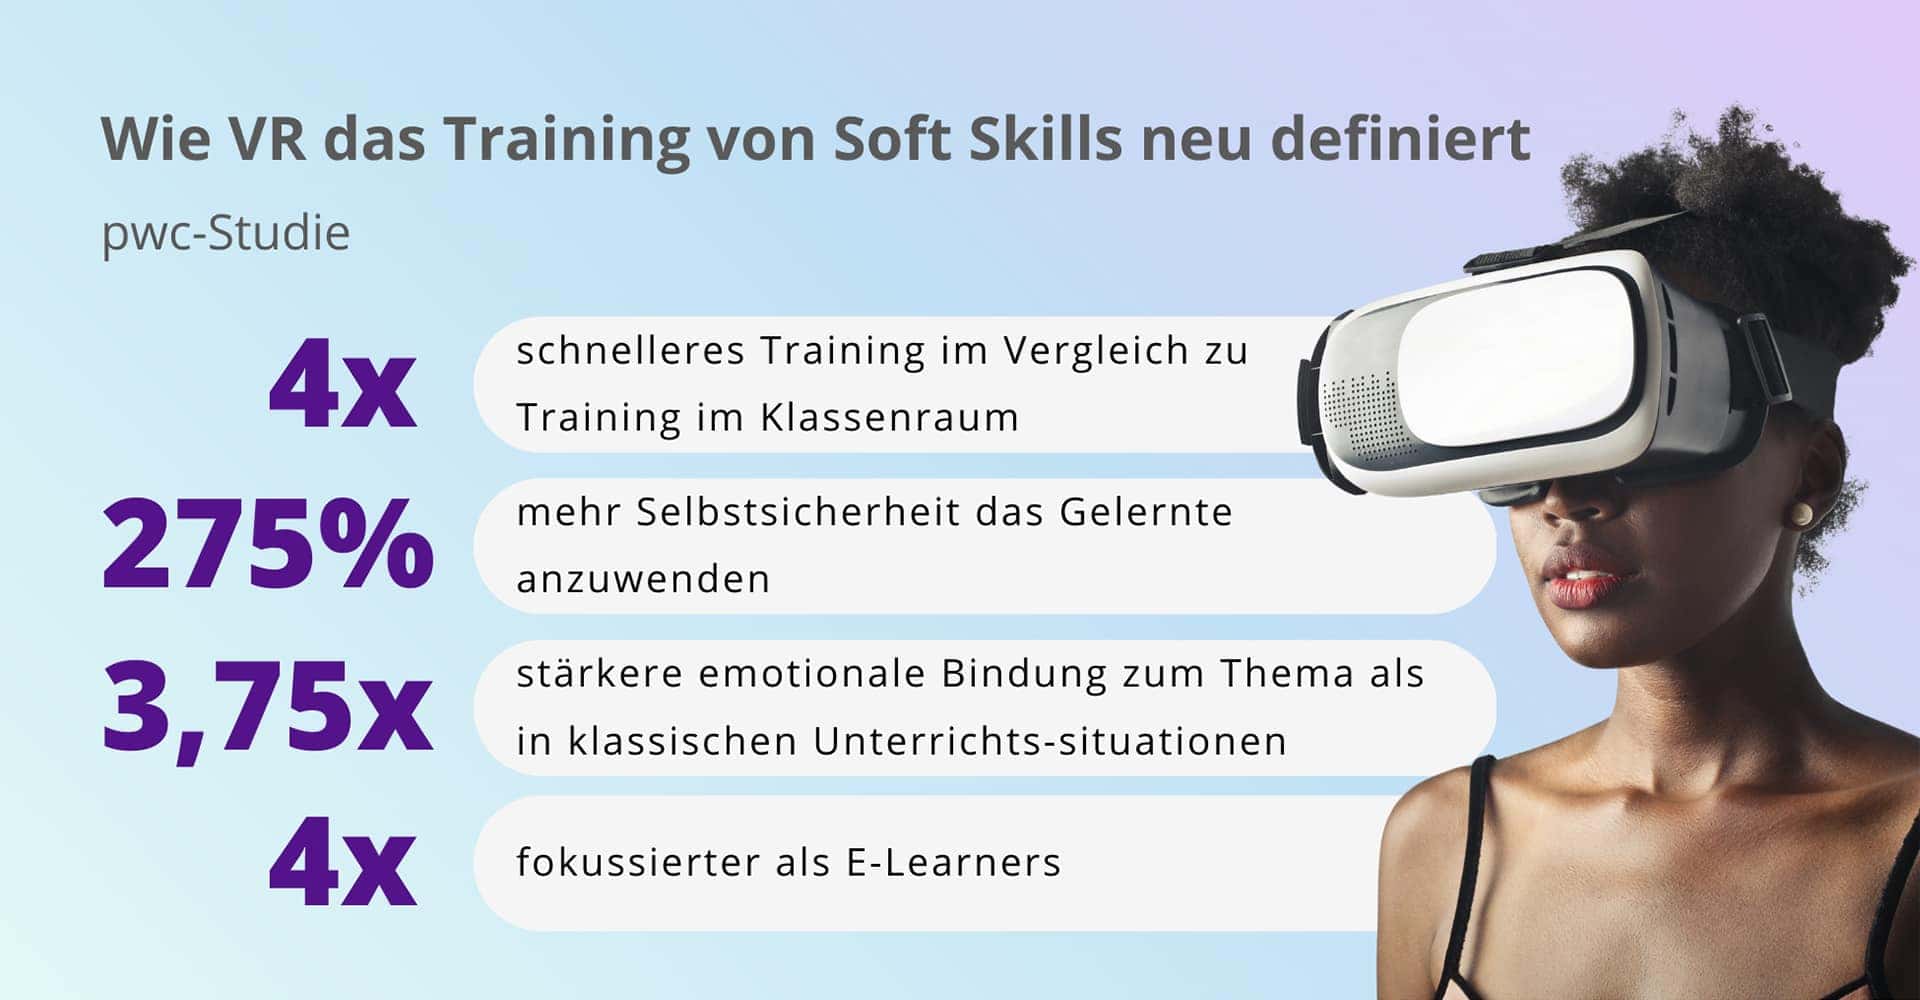 Virtual Reality definiert das Training von Soft Skills neu